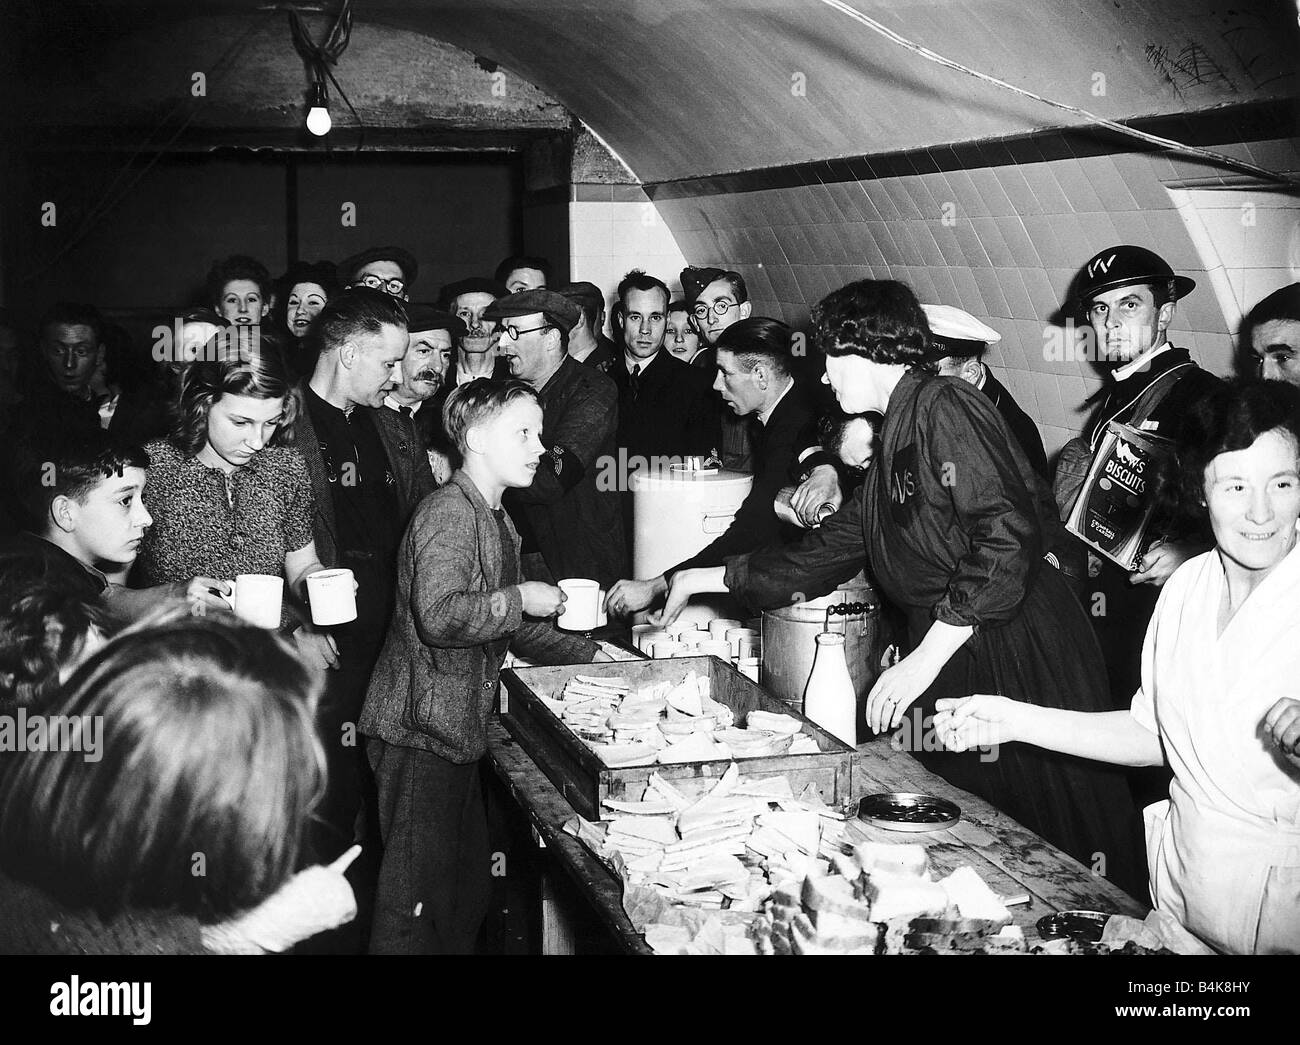 Womens Freiwilligendienst servieren Tee und Sandwiches für die Menschen in unterirdischen Luftschutzkeller während WW2 Lebensmittel Versorgung Zweiter Weltkrieg Weltkrieg 2. Oktober 1940 der 1940er Jahre Mirrorpix Stockfoto